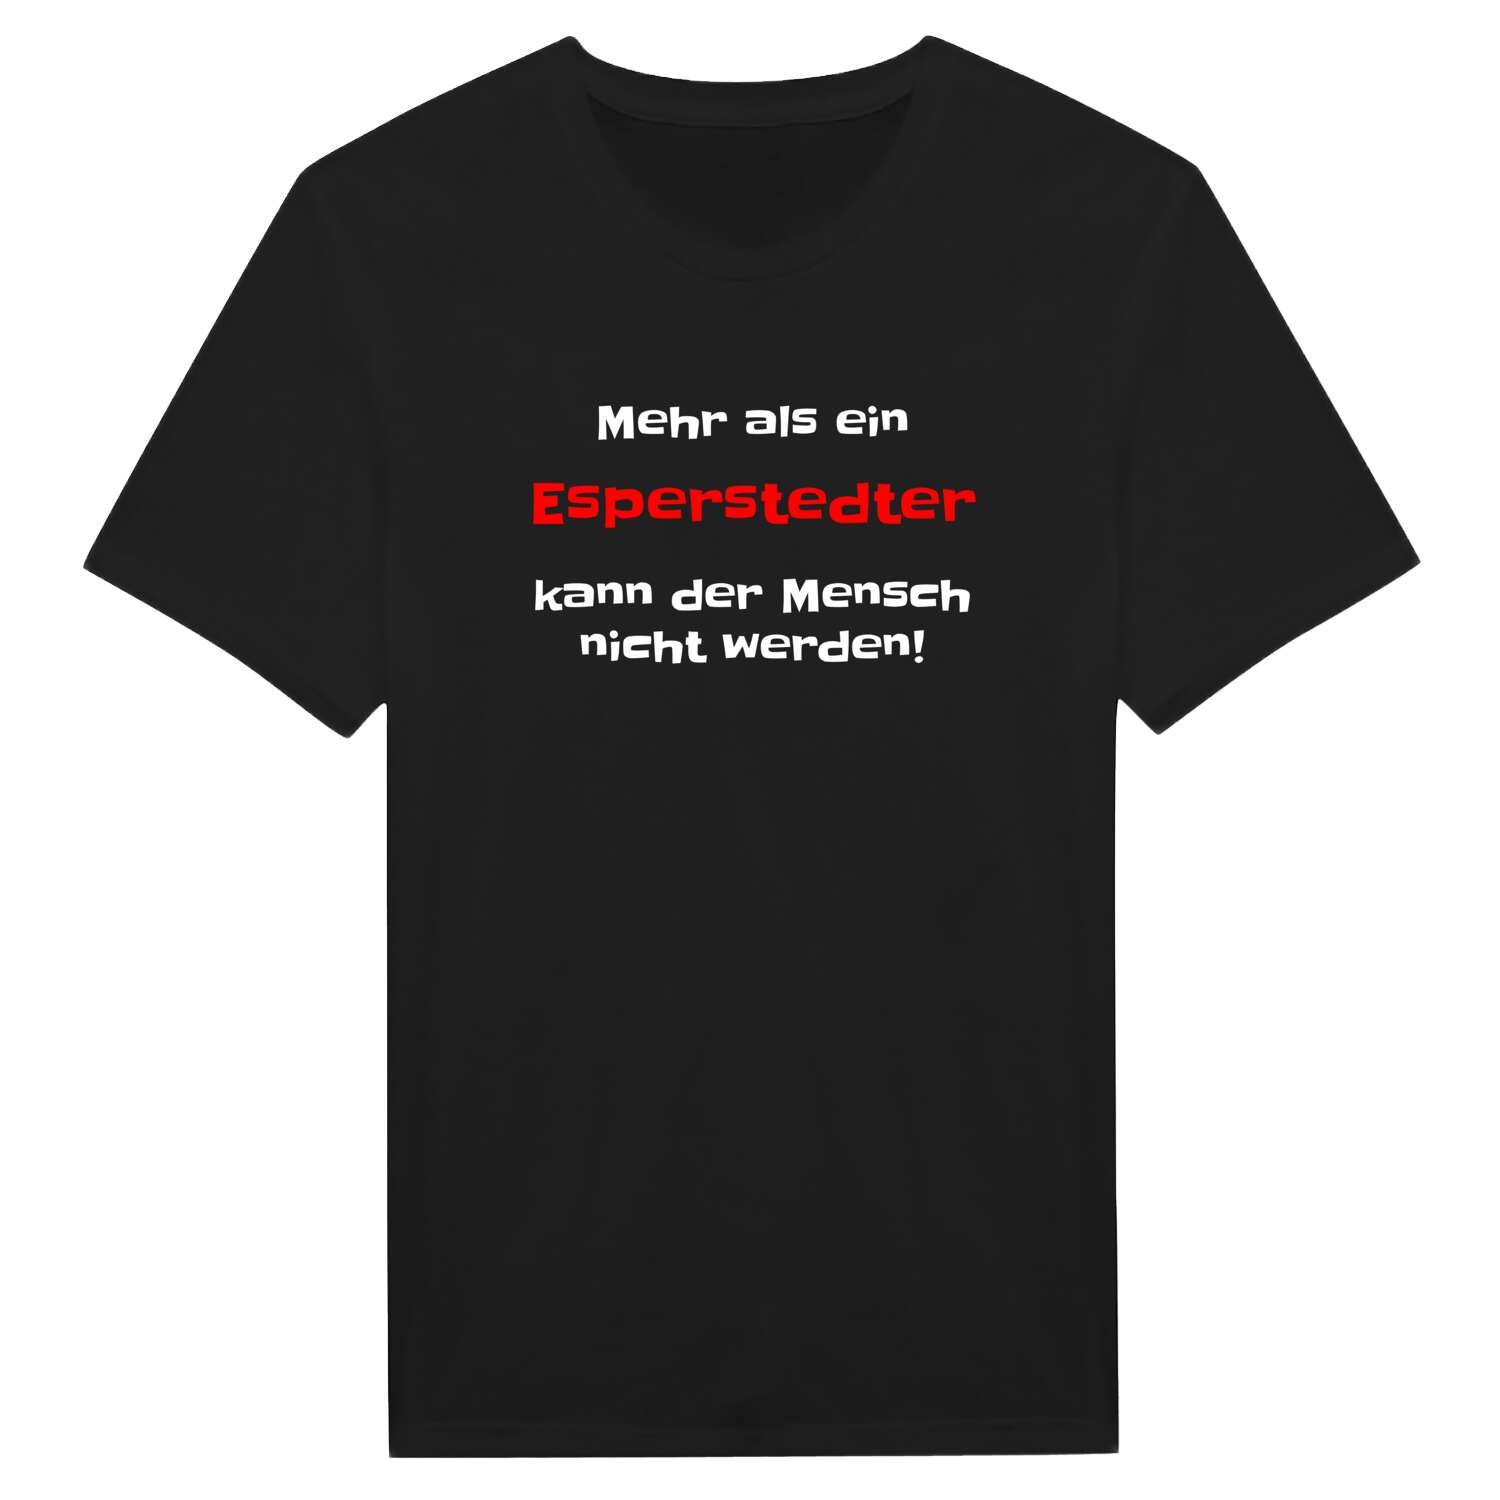 Esperstedt T-Shirt »Mehr als ein«